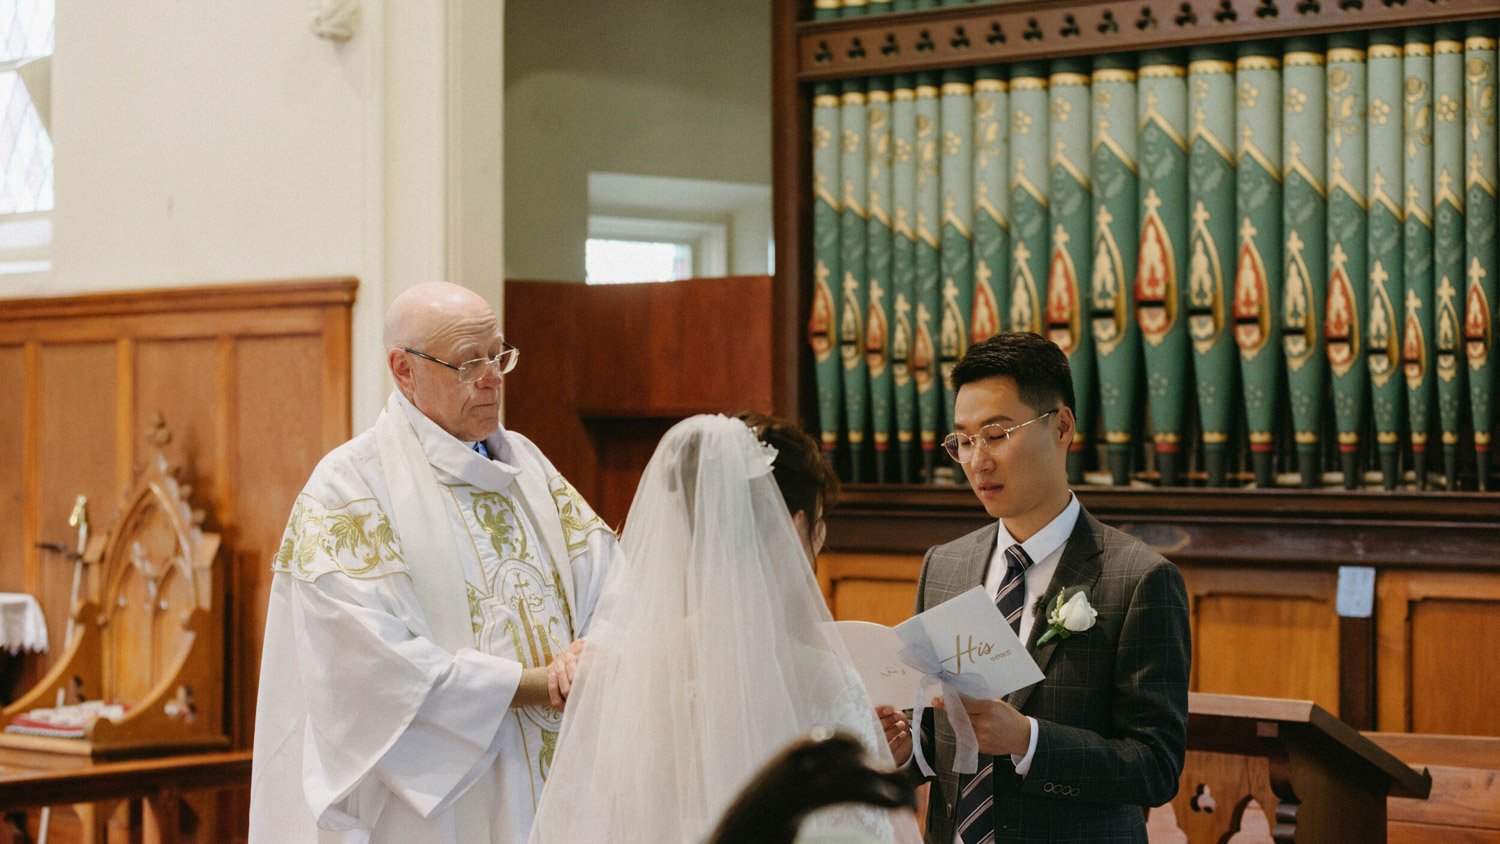 Queenstownn St Peter's Anglican Church wedding elopement photographer Panda Bay Films-18.jpg